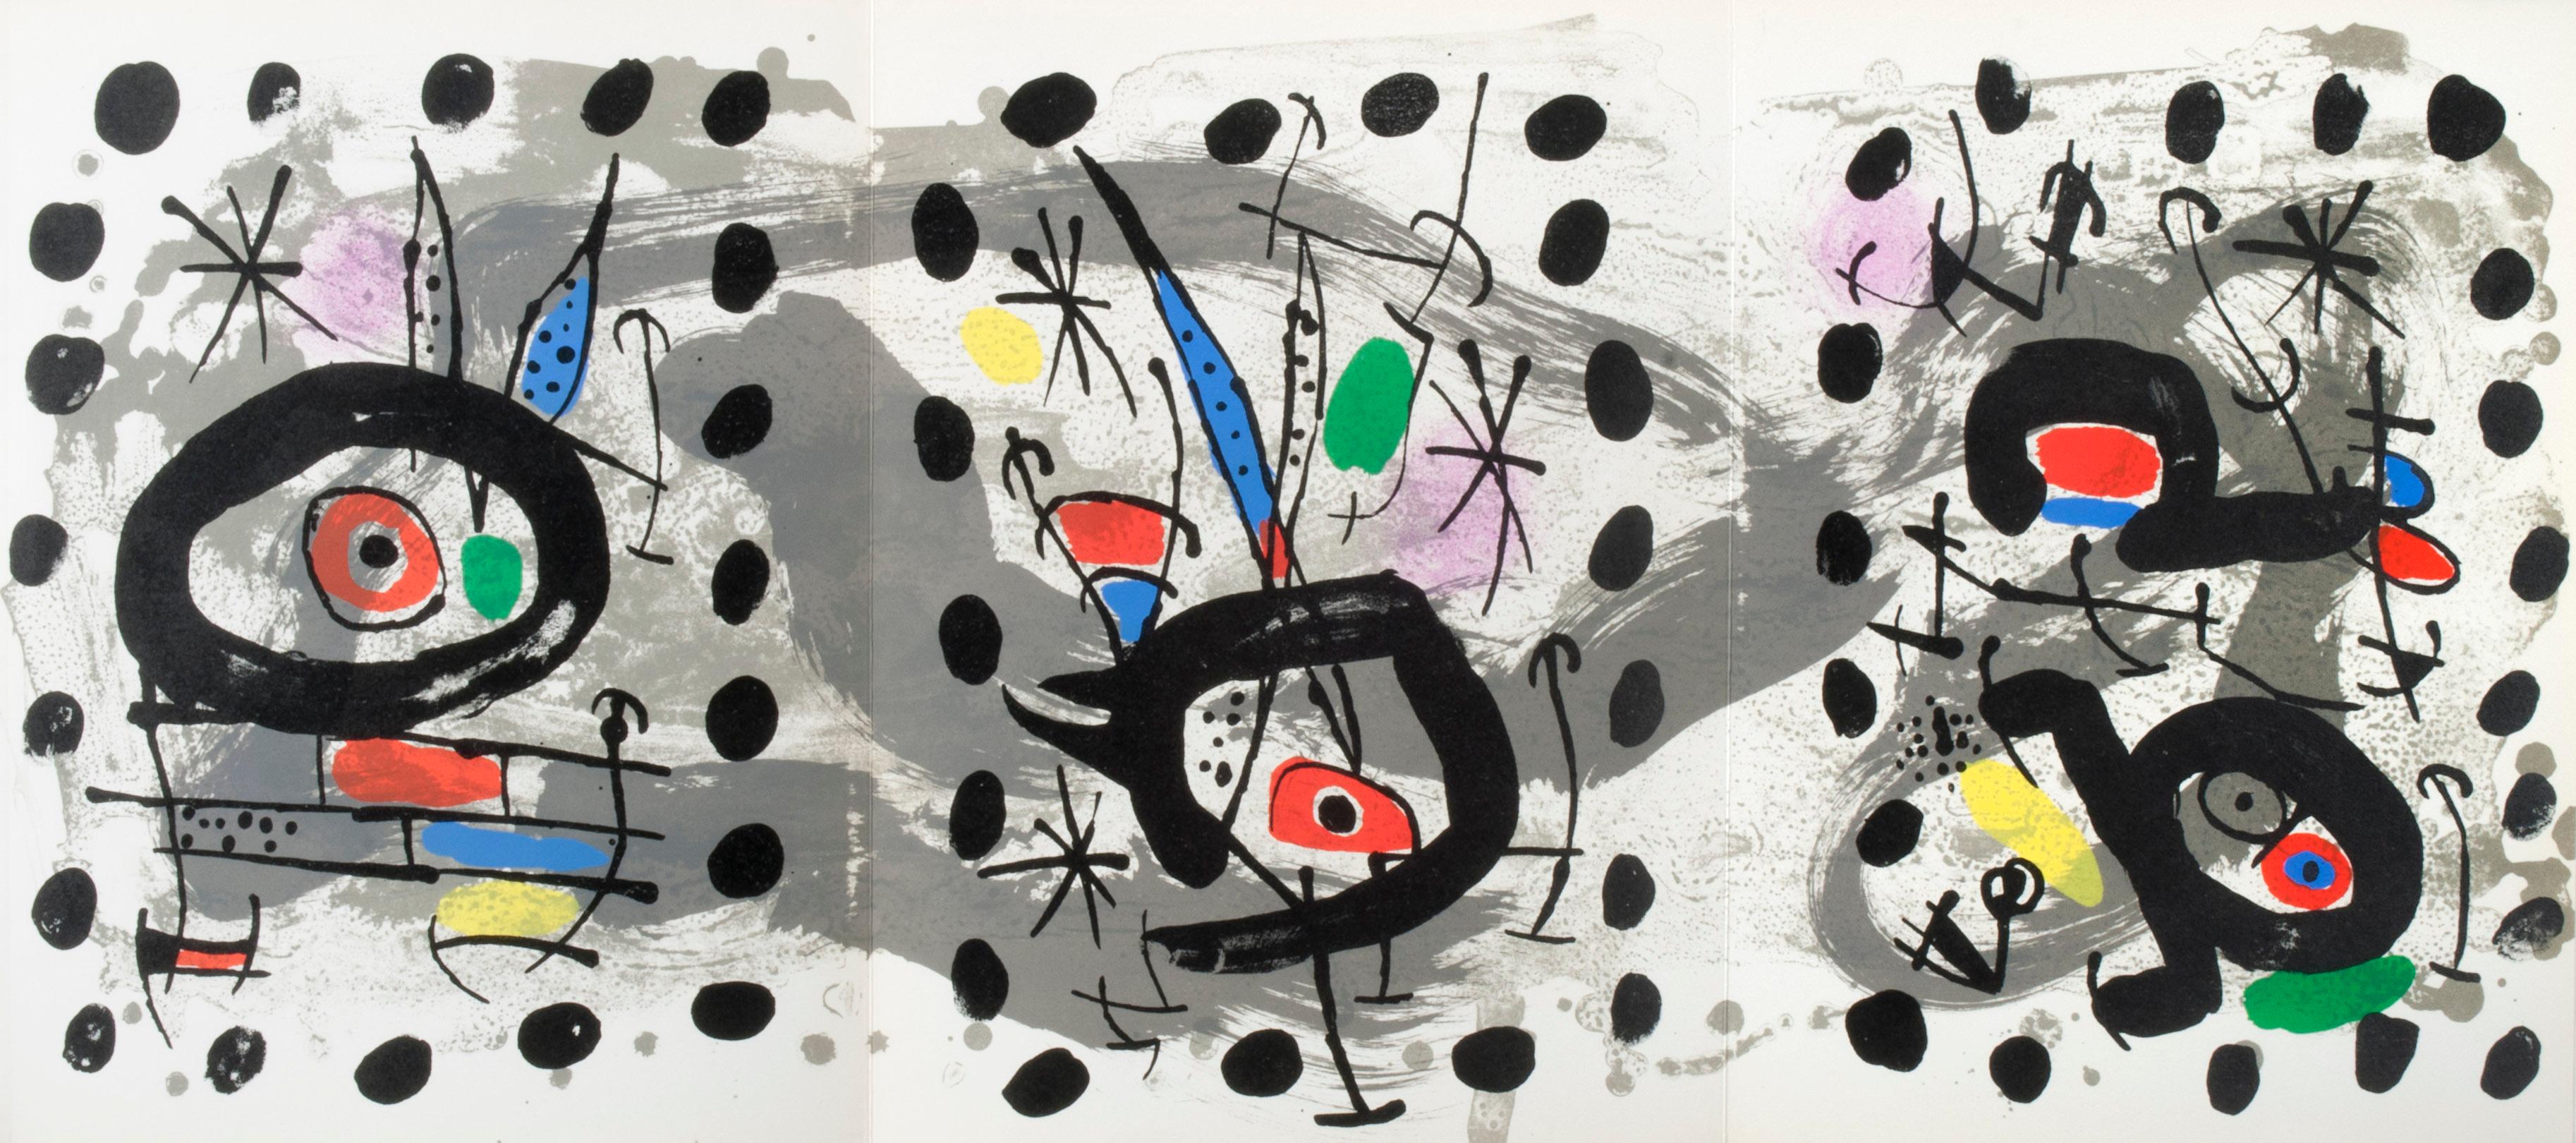 Joan Miró Abstract Print - Oiseau solaire, oiseau lunaire, etincelles (Solar Bird, Lunar Bird, Sparks)